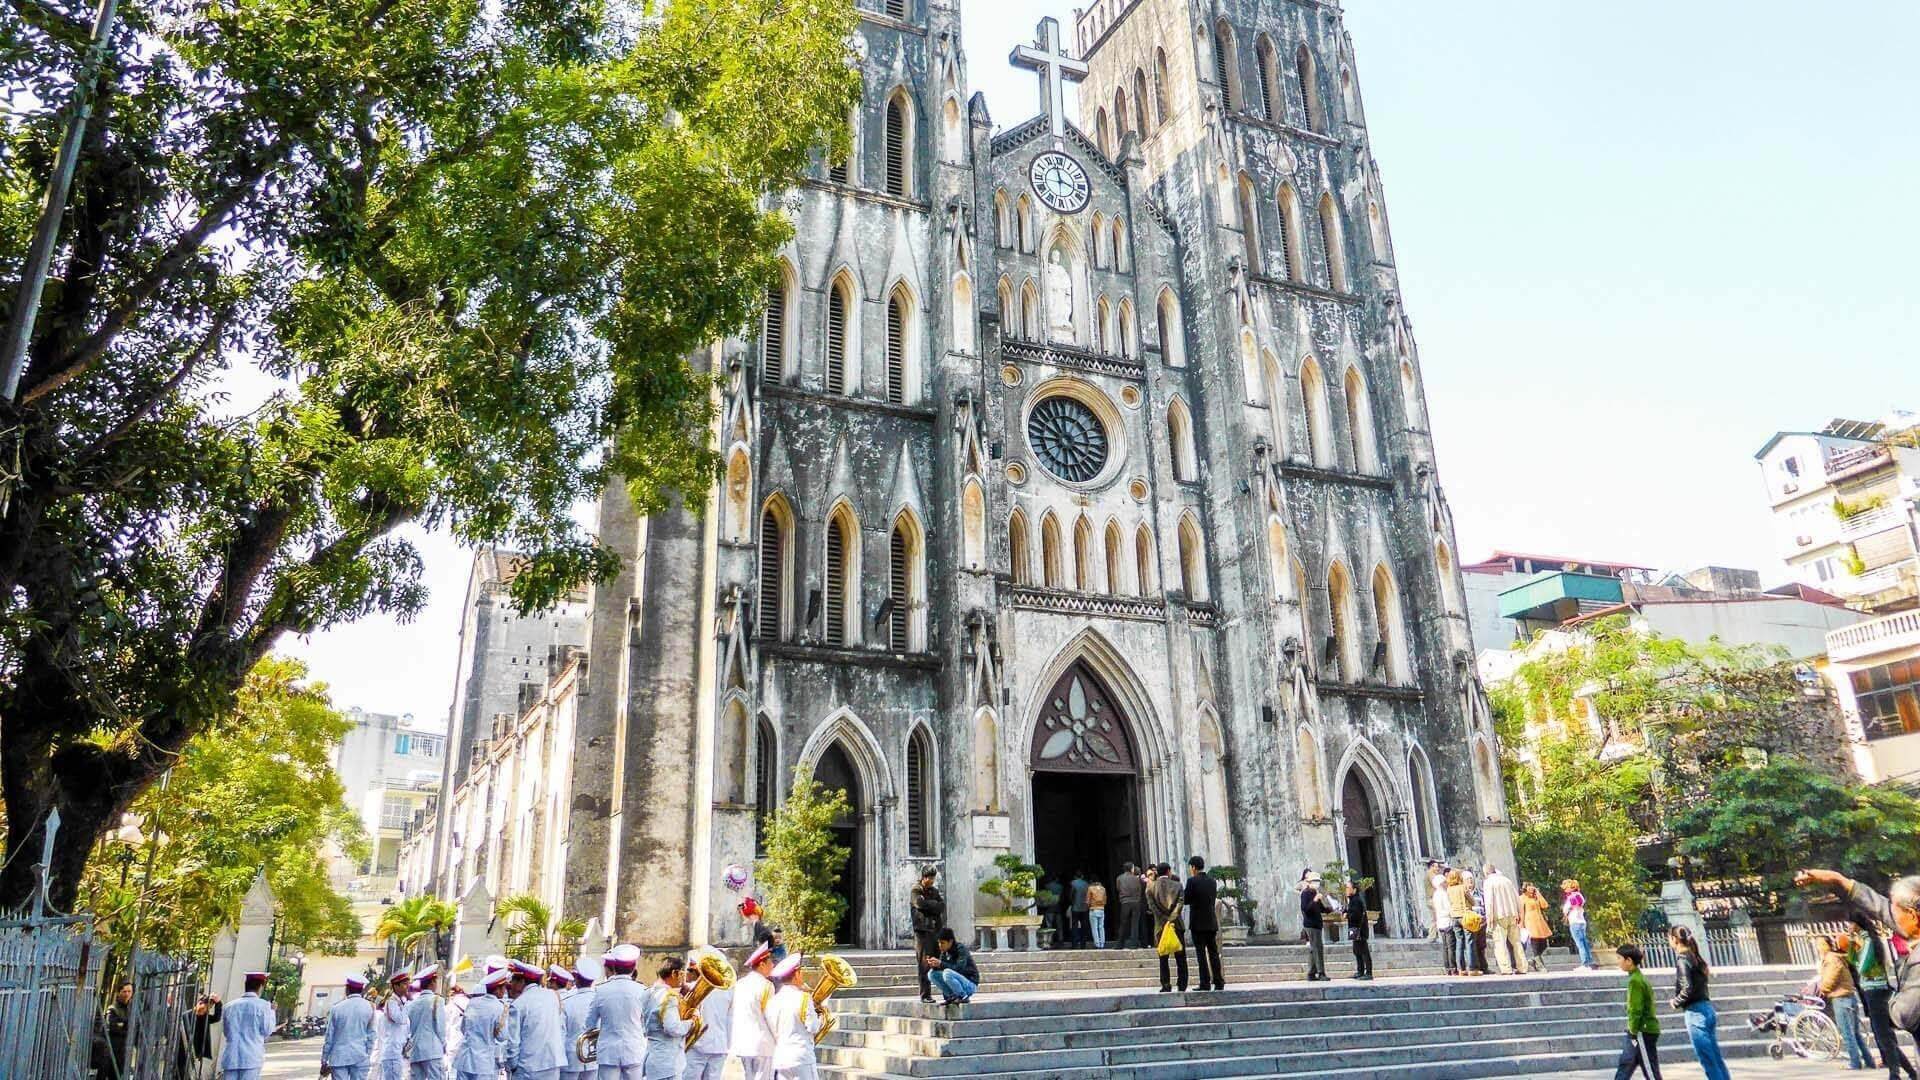 Khám phá nhà thờ lớn Hà Nội - một trong 7 nhà thờ lớn nhất thủ đô